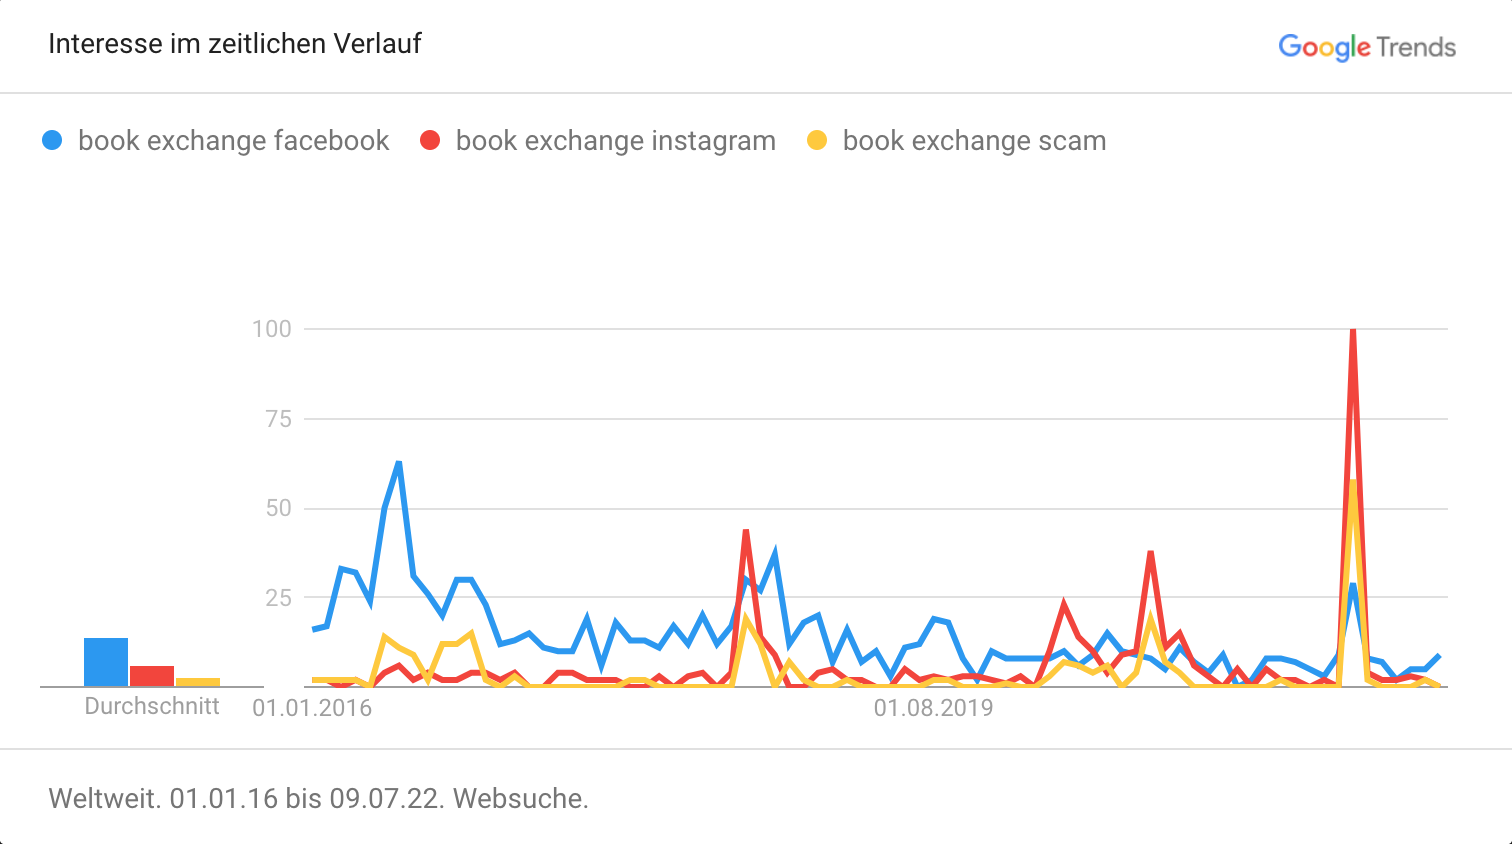 Google Trend Grafik, welche die Begriffe 'Book Exchange Facebook', 'Book Exchange Instagram' und 'Book Exchange Scam' miteinander vergleicht.